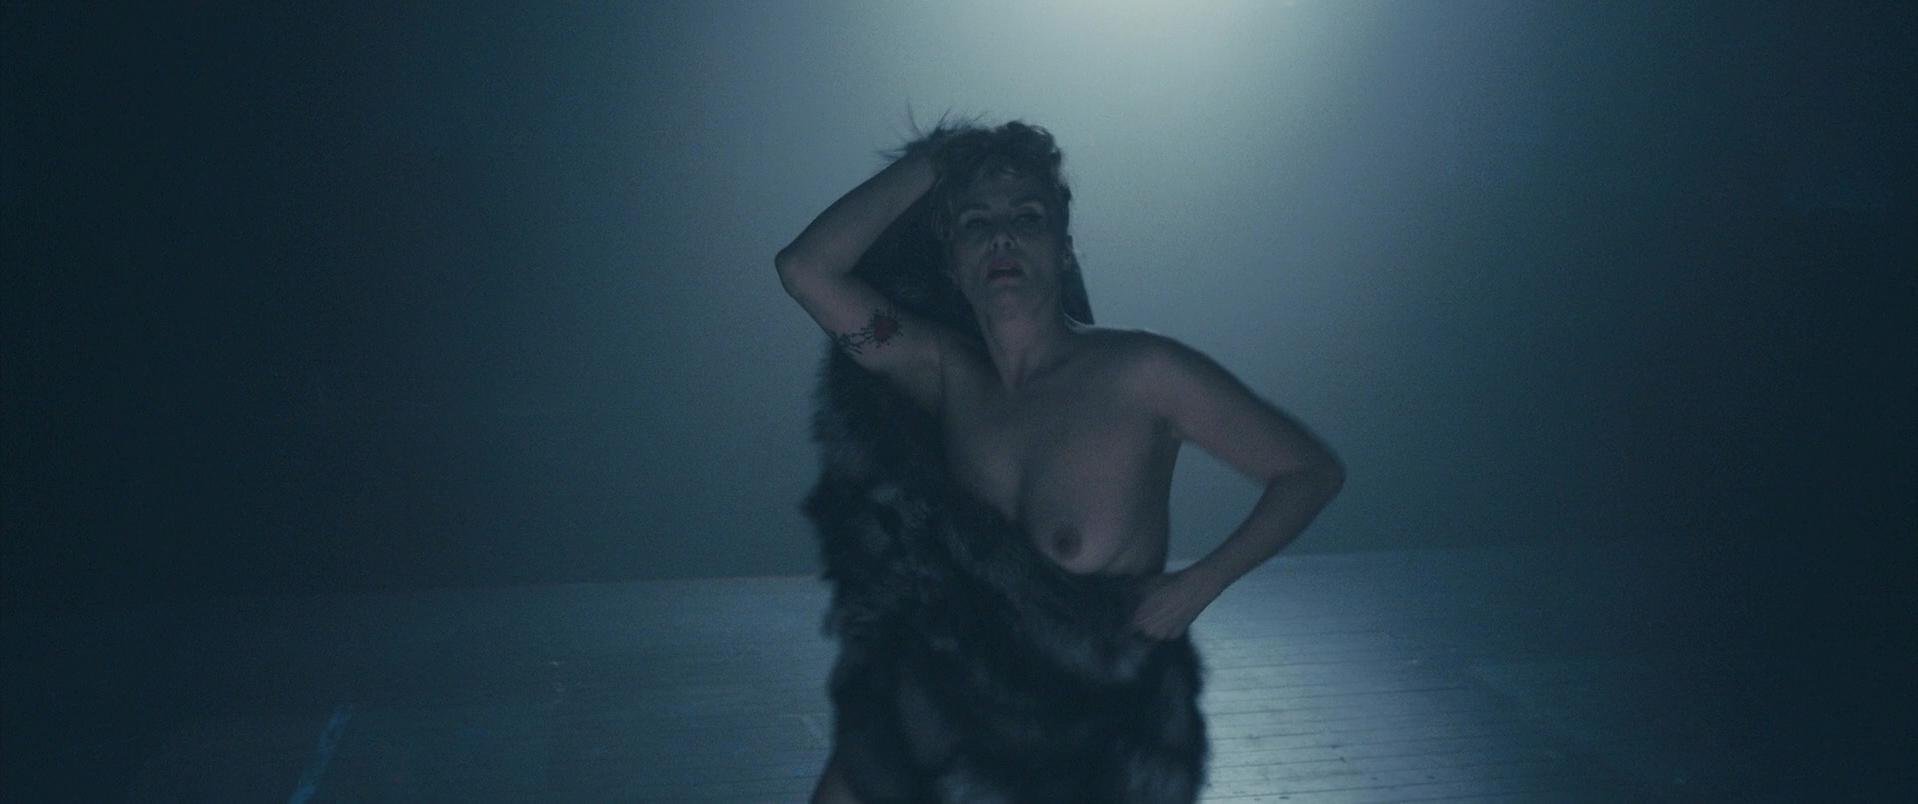 Nude Video Celebs Actress Emmanuelle Seigner